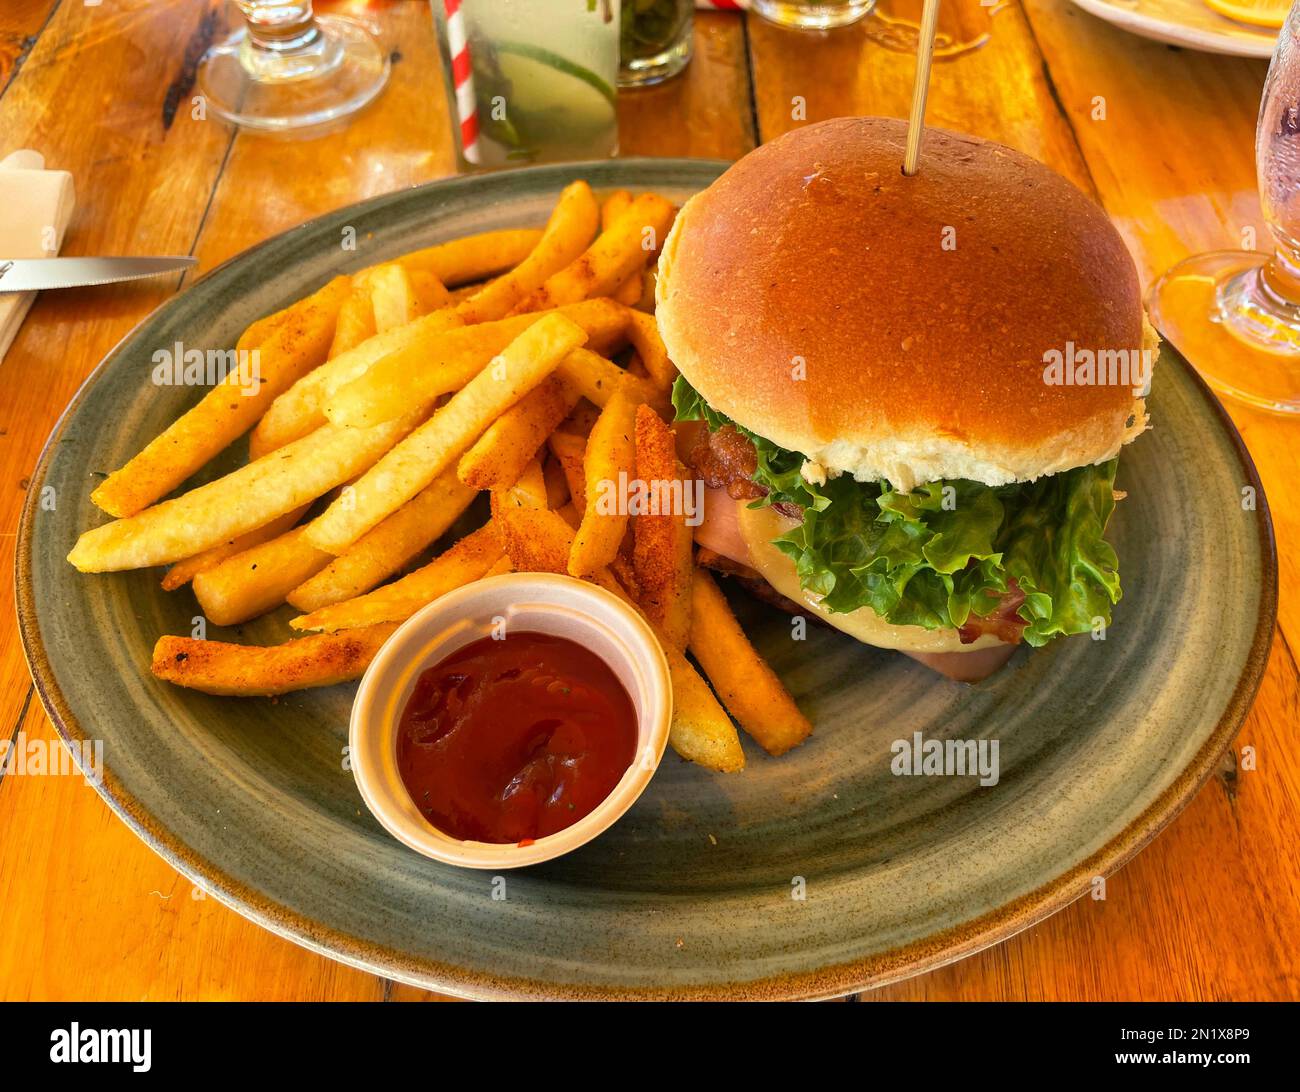 Gros plan du sandwich et des frites, un plat de ketchup et un mojito. Banque D'Images